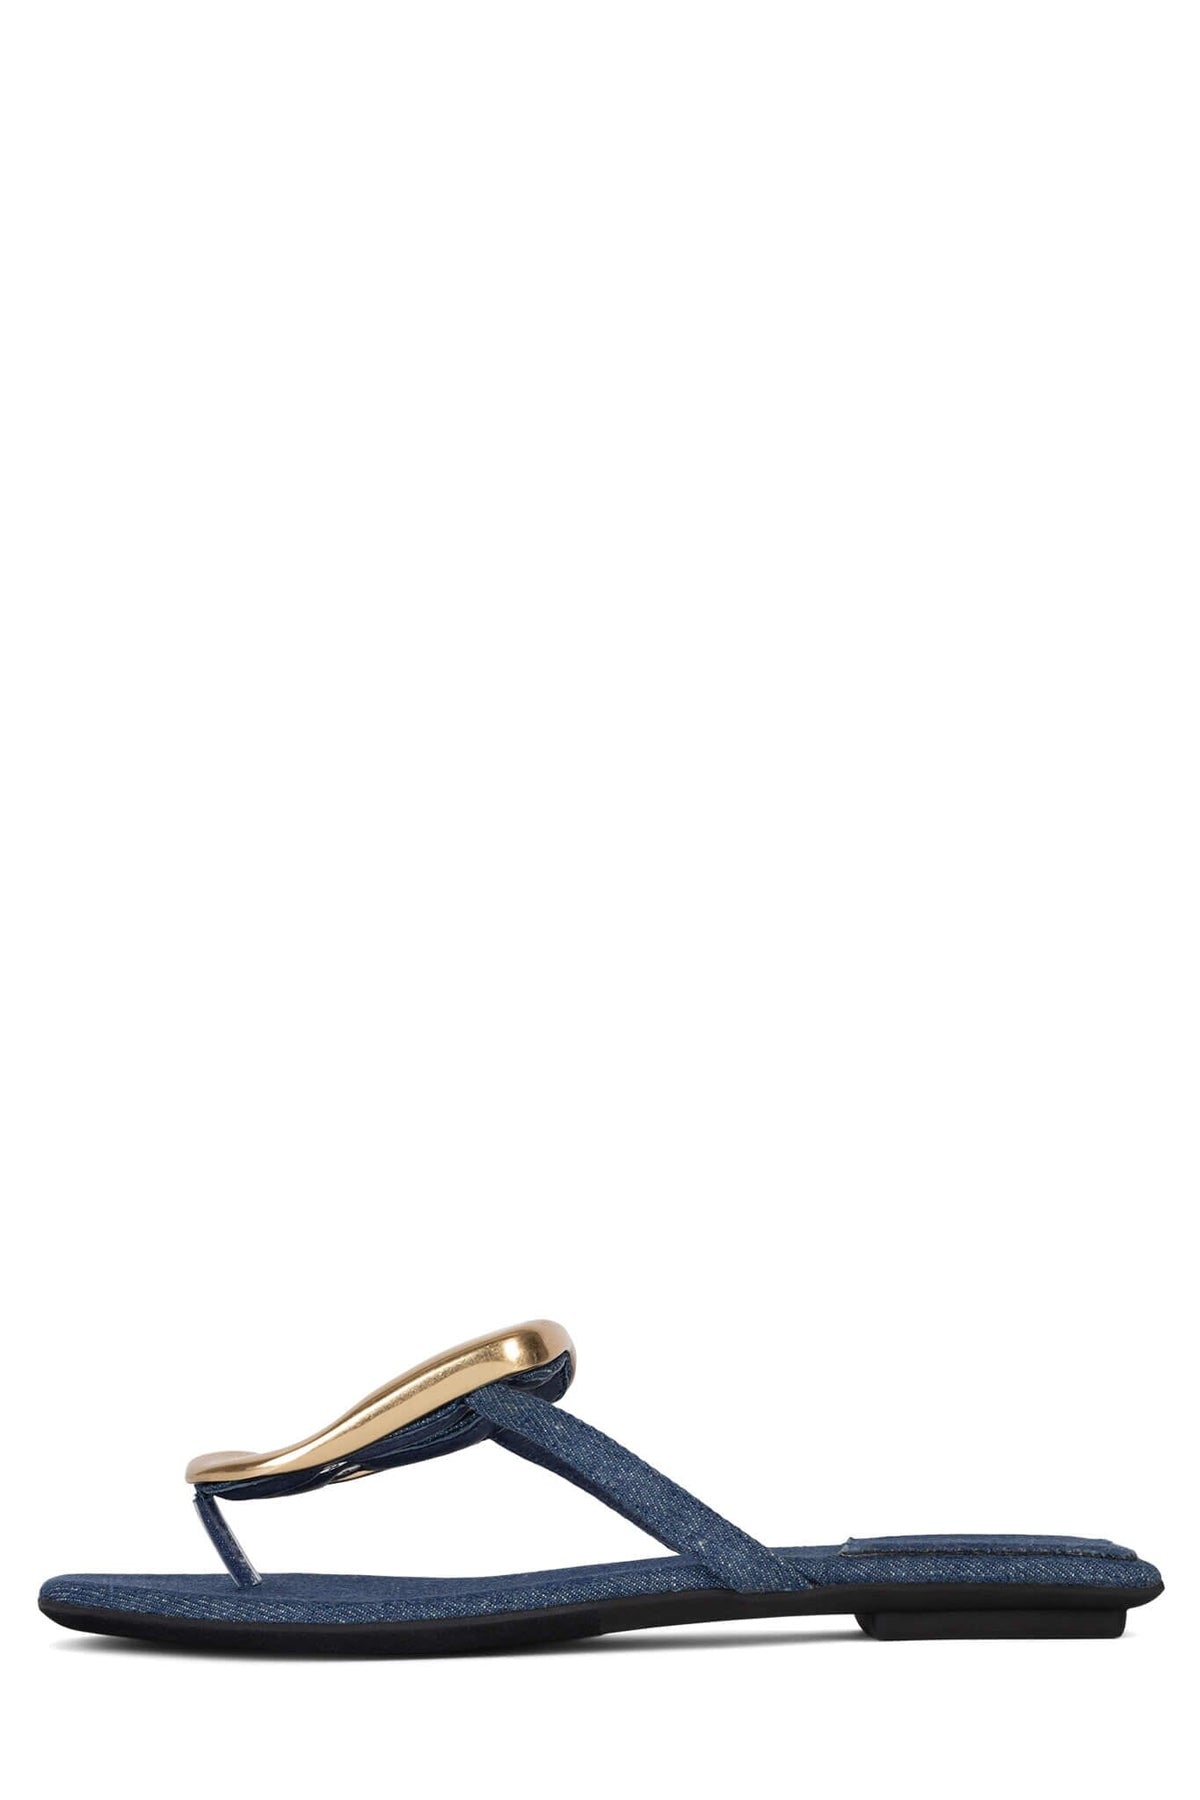 LINQUES-2 Jeffrey Campbell Flat Sandals Blue Denim Gold